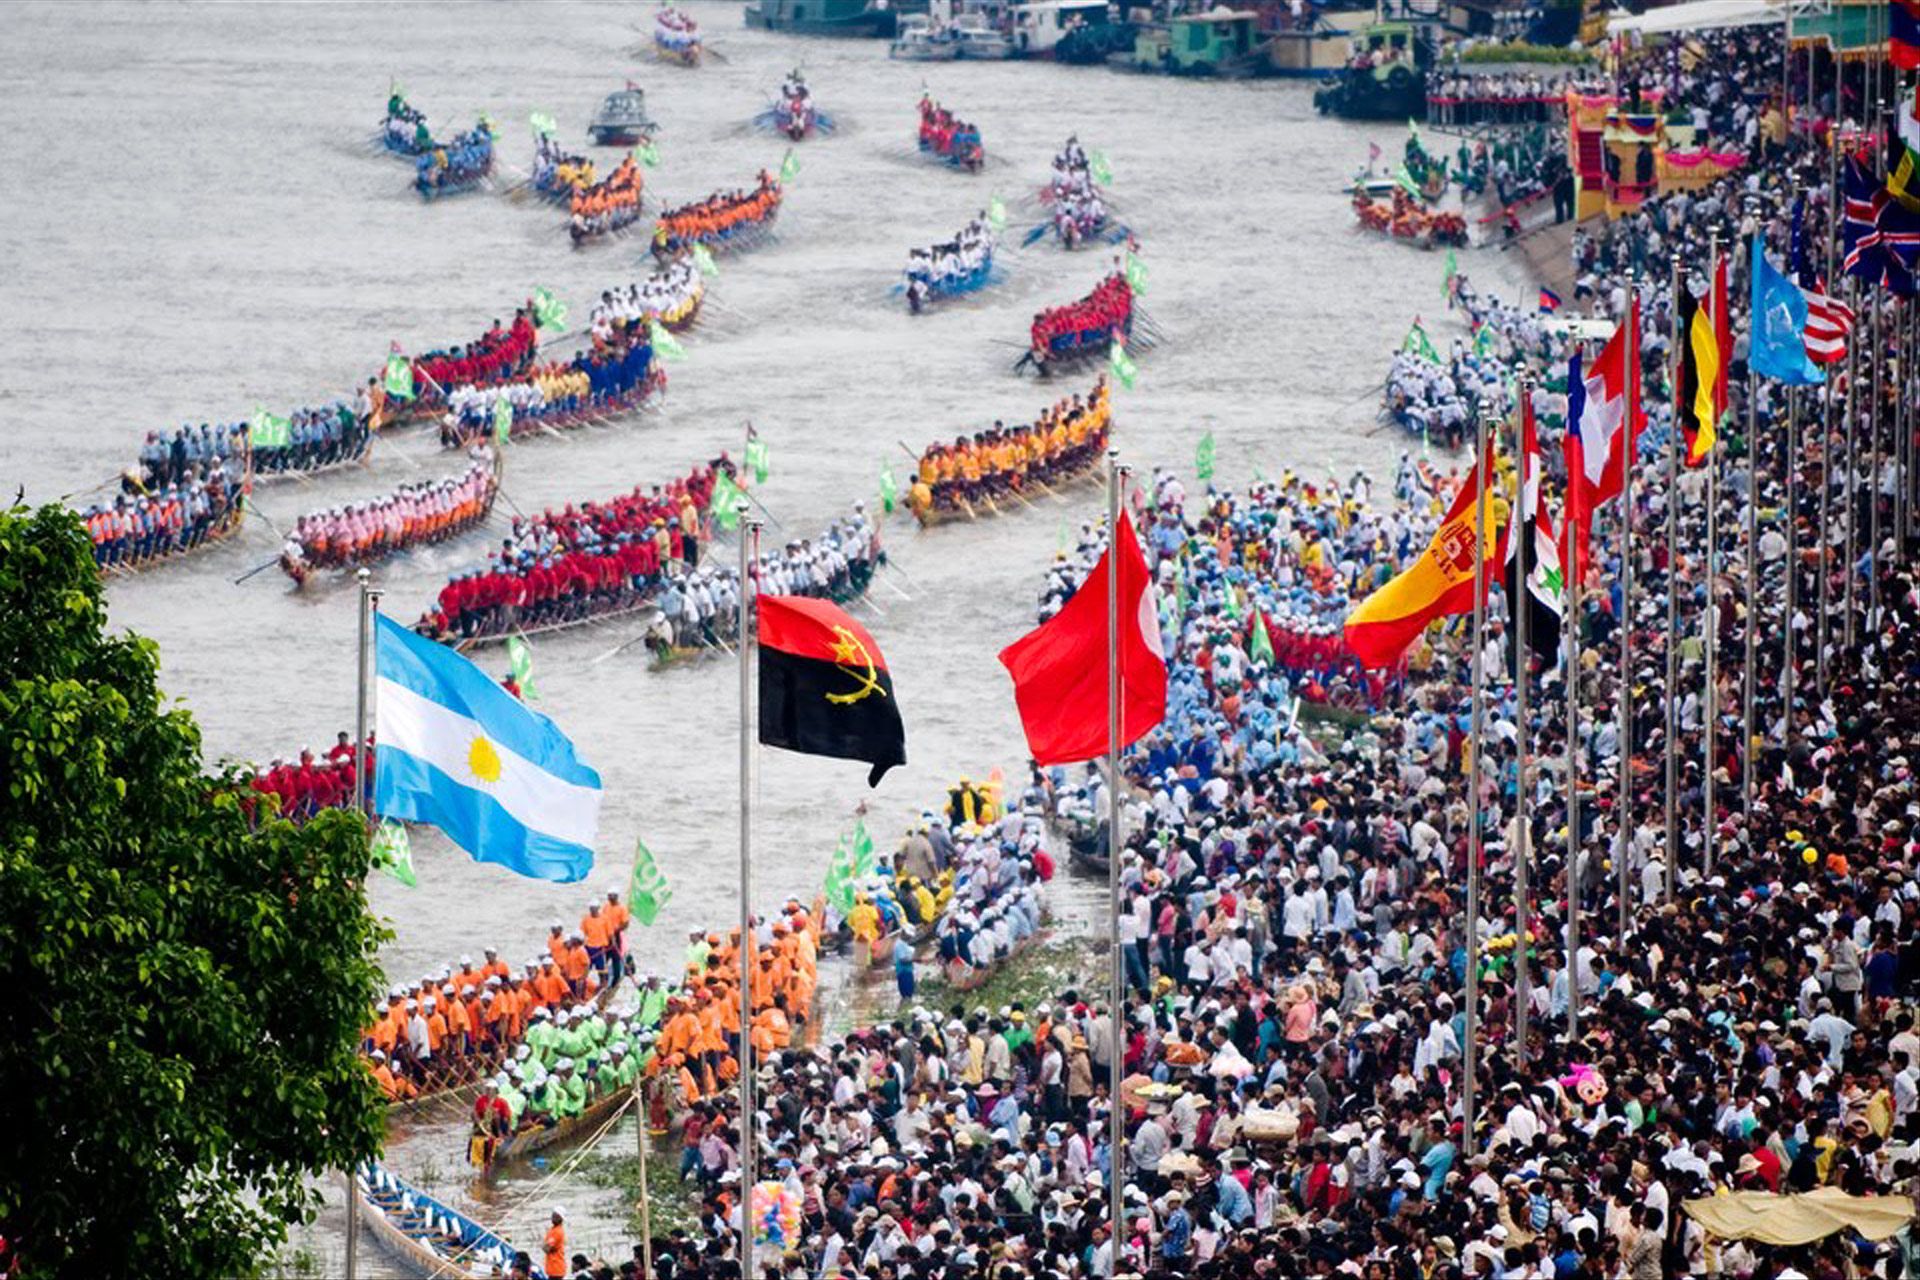 Scoprire la Cambogia: il Water Festival e le sue sfilate